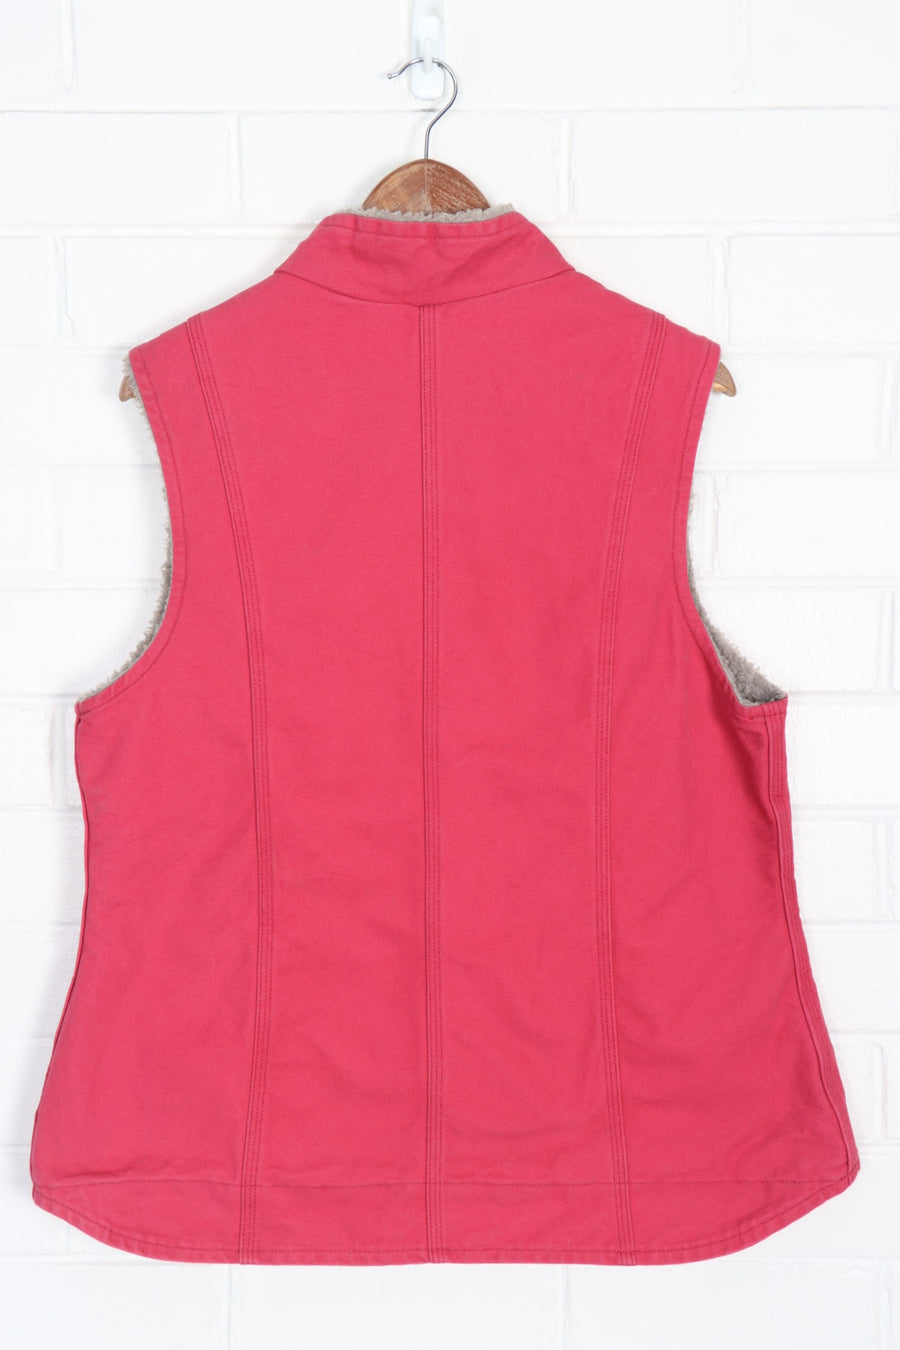 CARHARTT Pink Work Wear Canvas Sherpa Lined Jacket Vest (M-L)